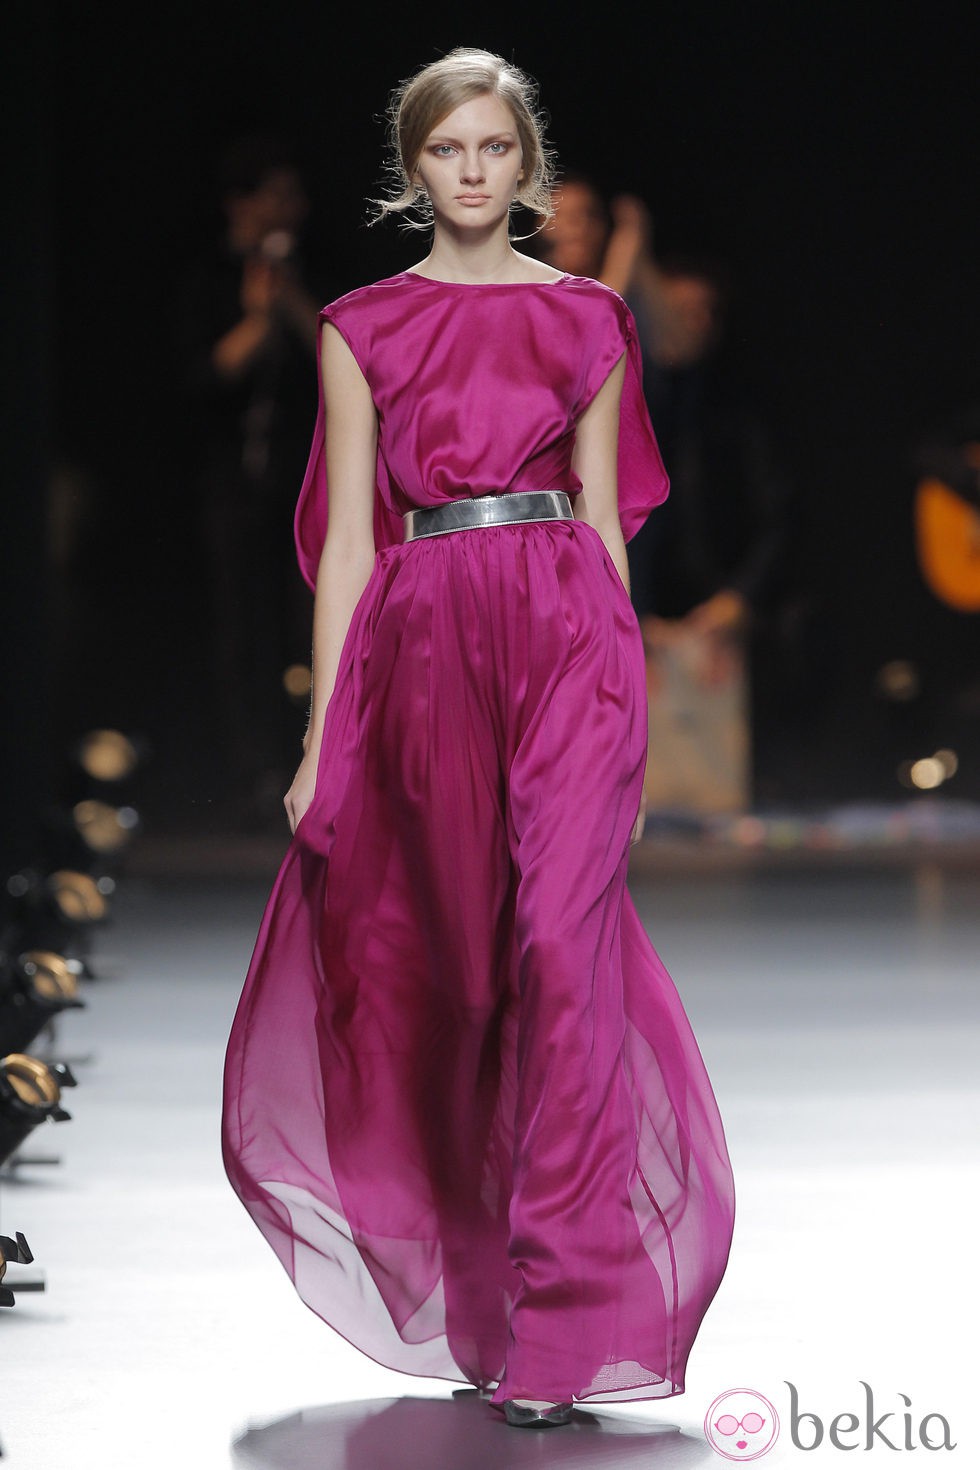 Vestido morado de la colección otoño/invierno 2013/2014 de Duyos en Madrid Fashion Week